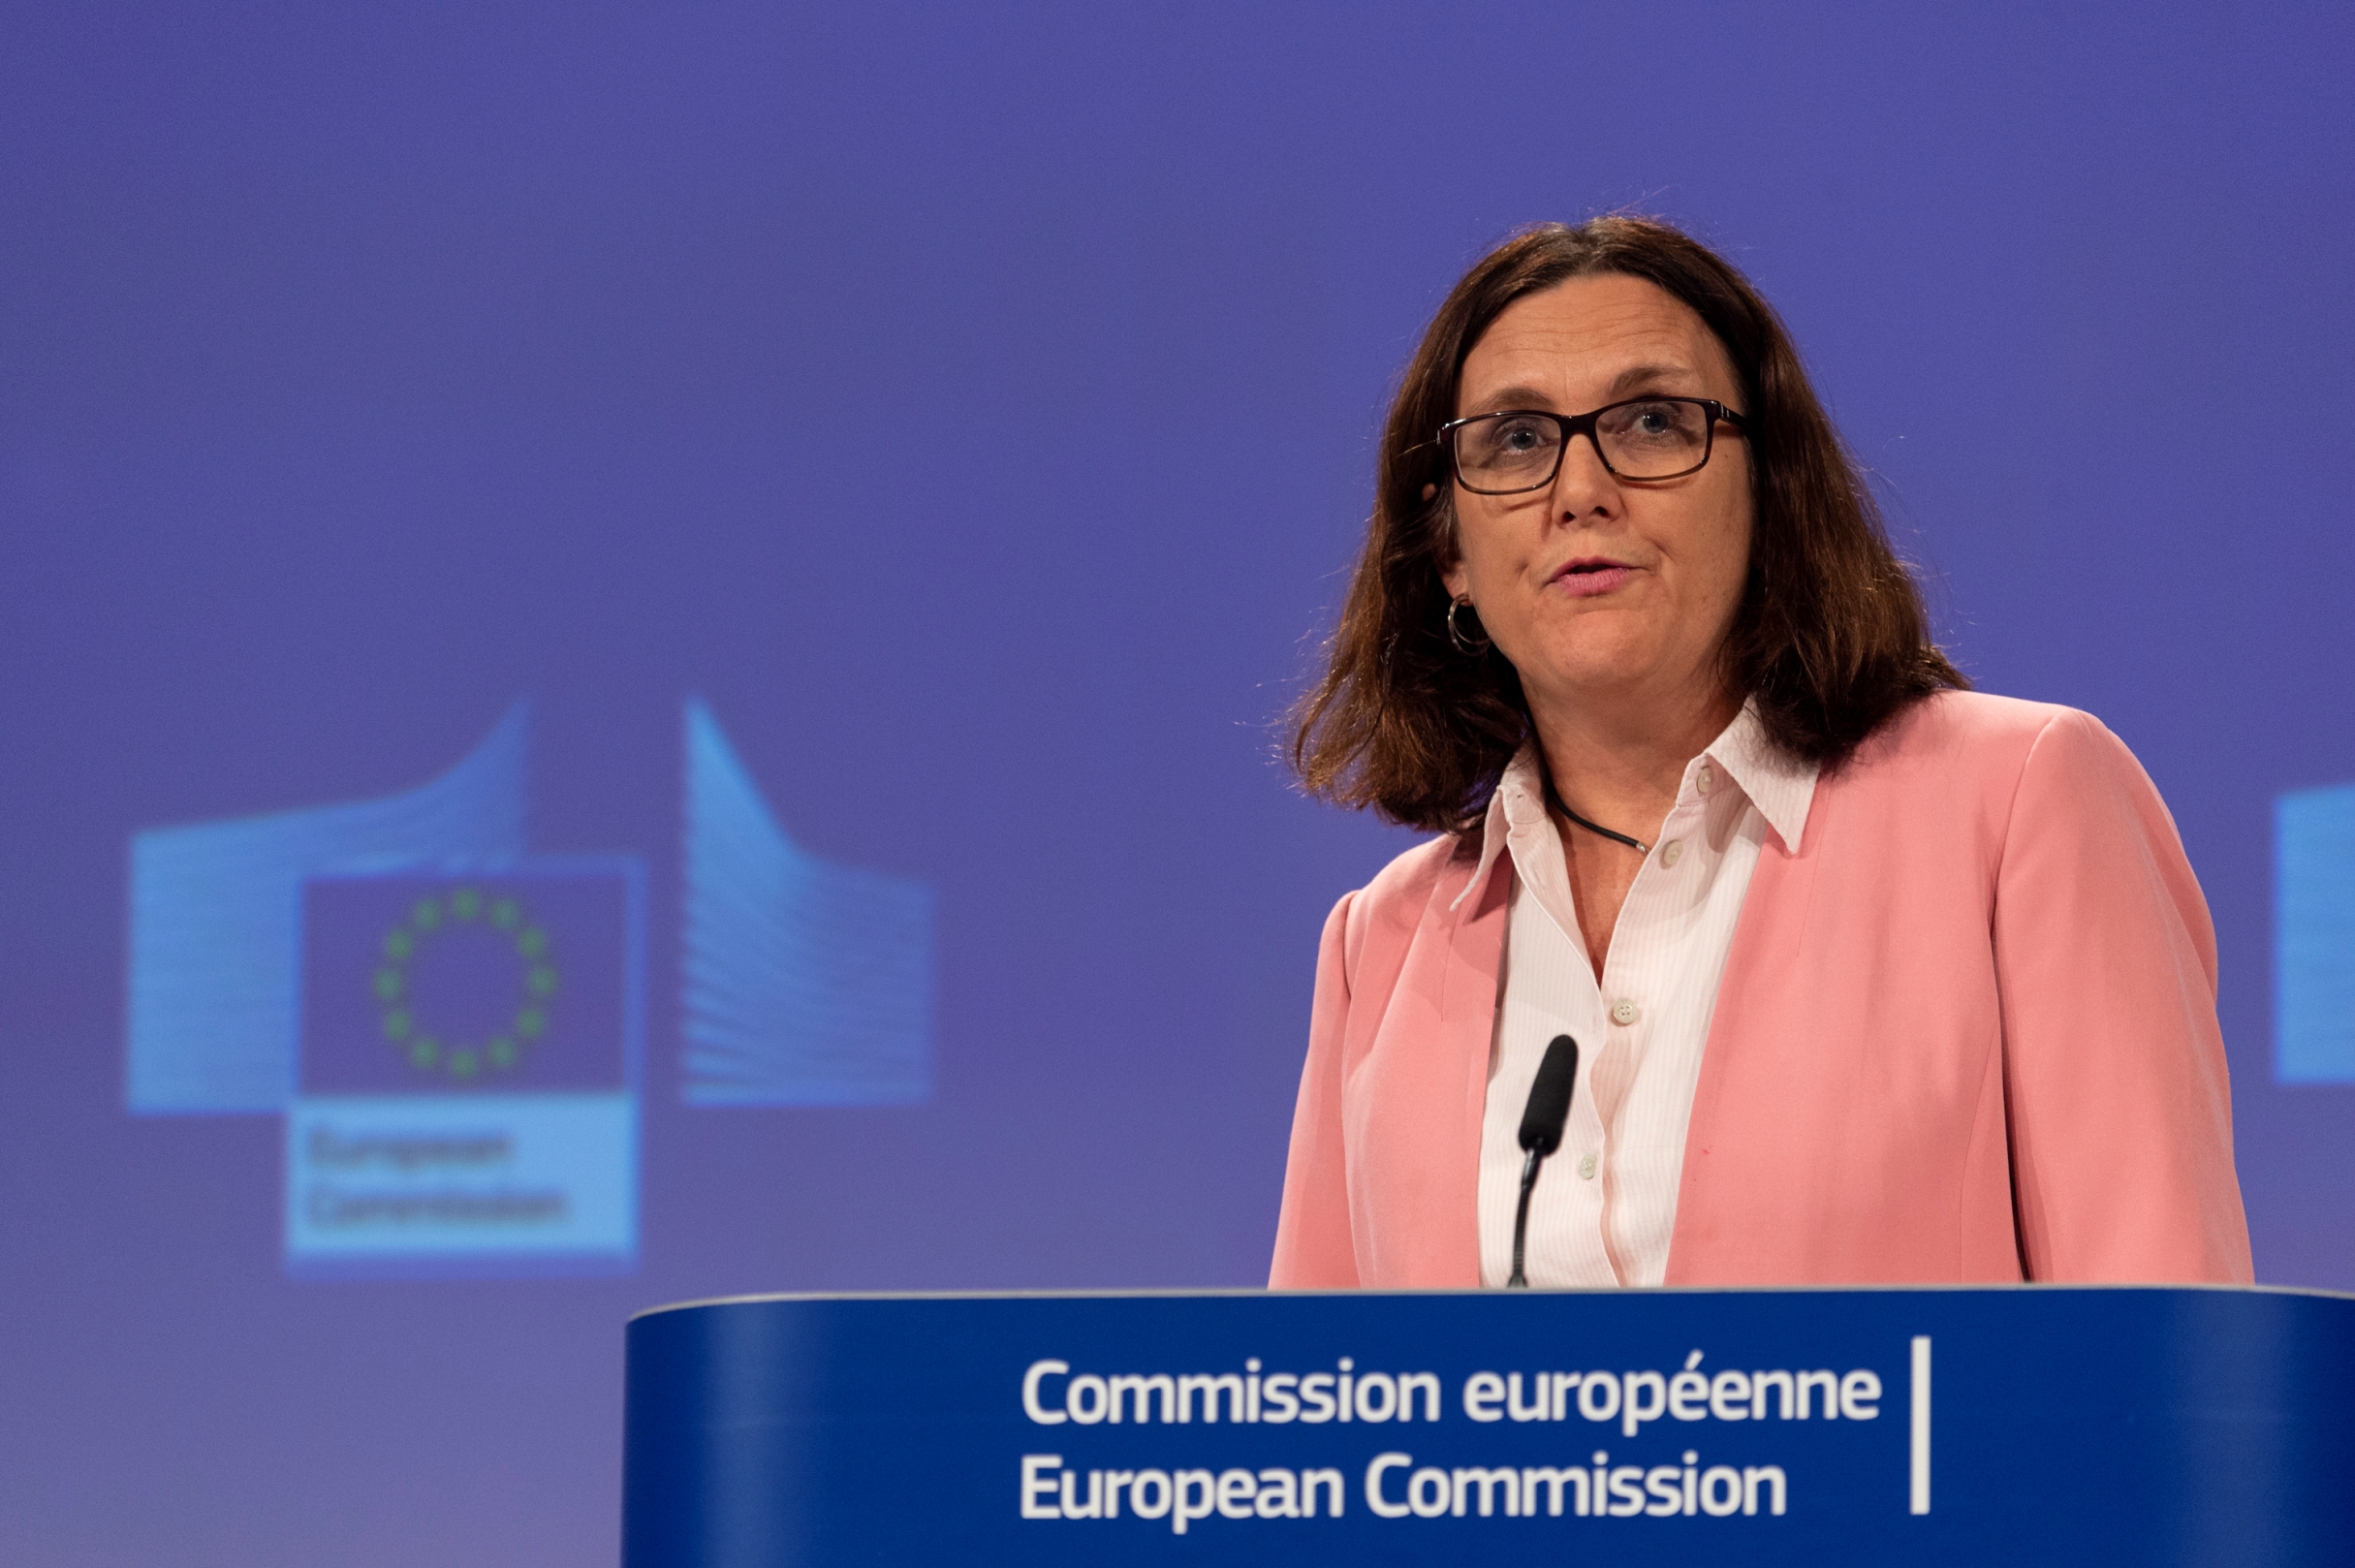 EU trade Commissioner  Cecilia Malmstrom speaking at the press conference 